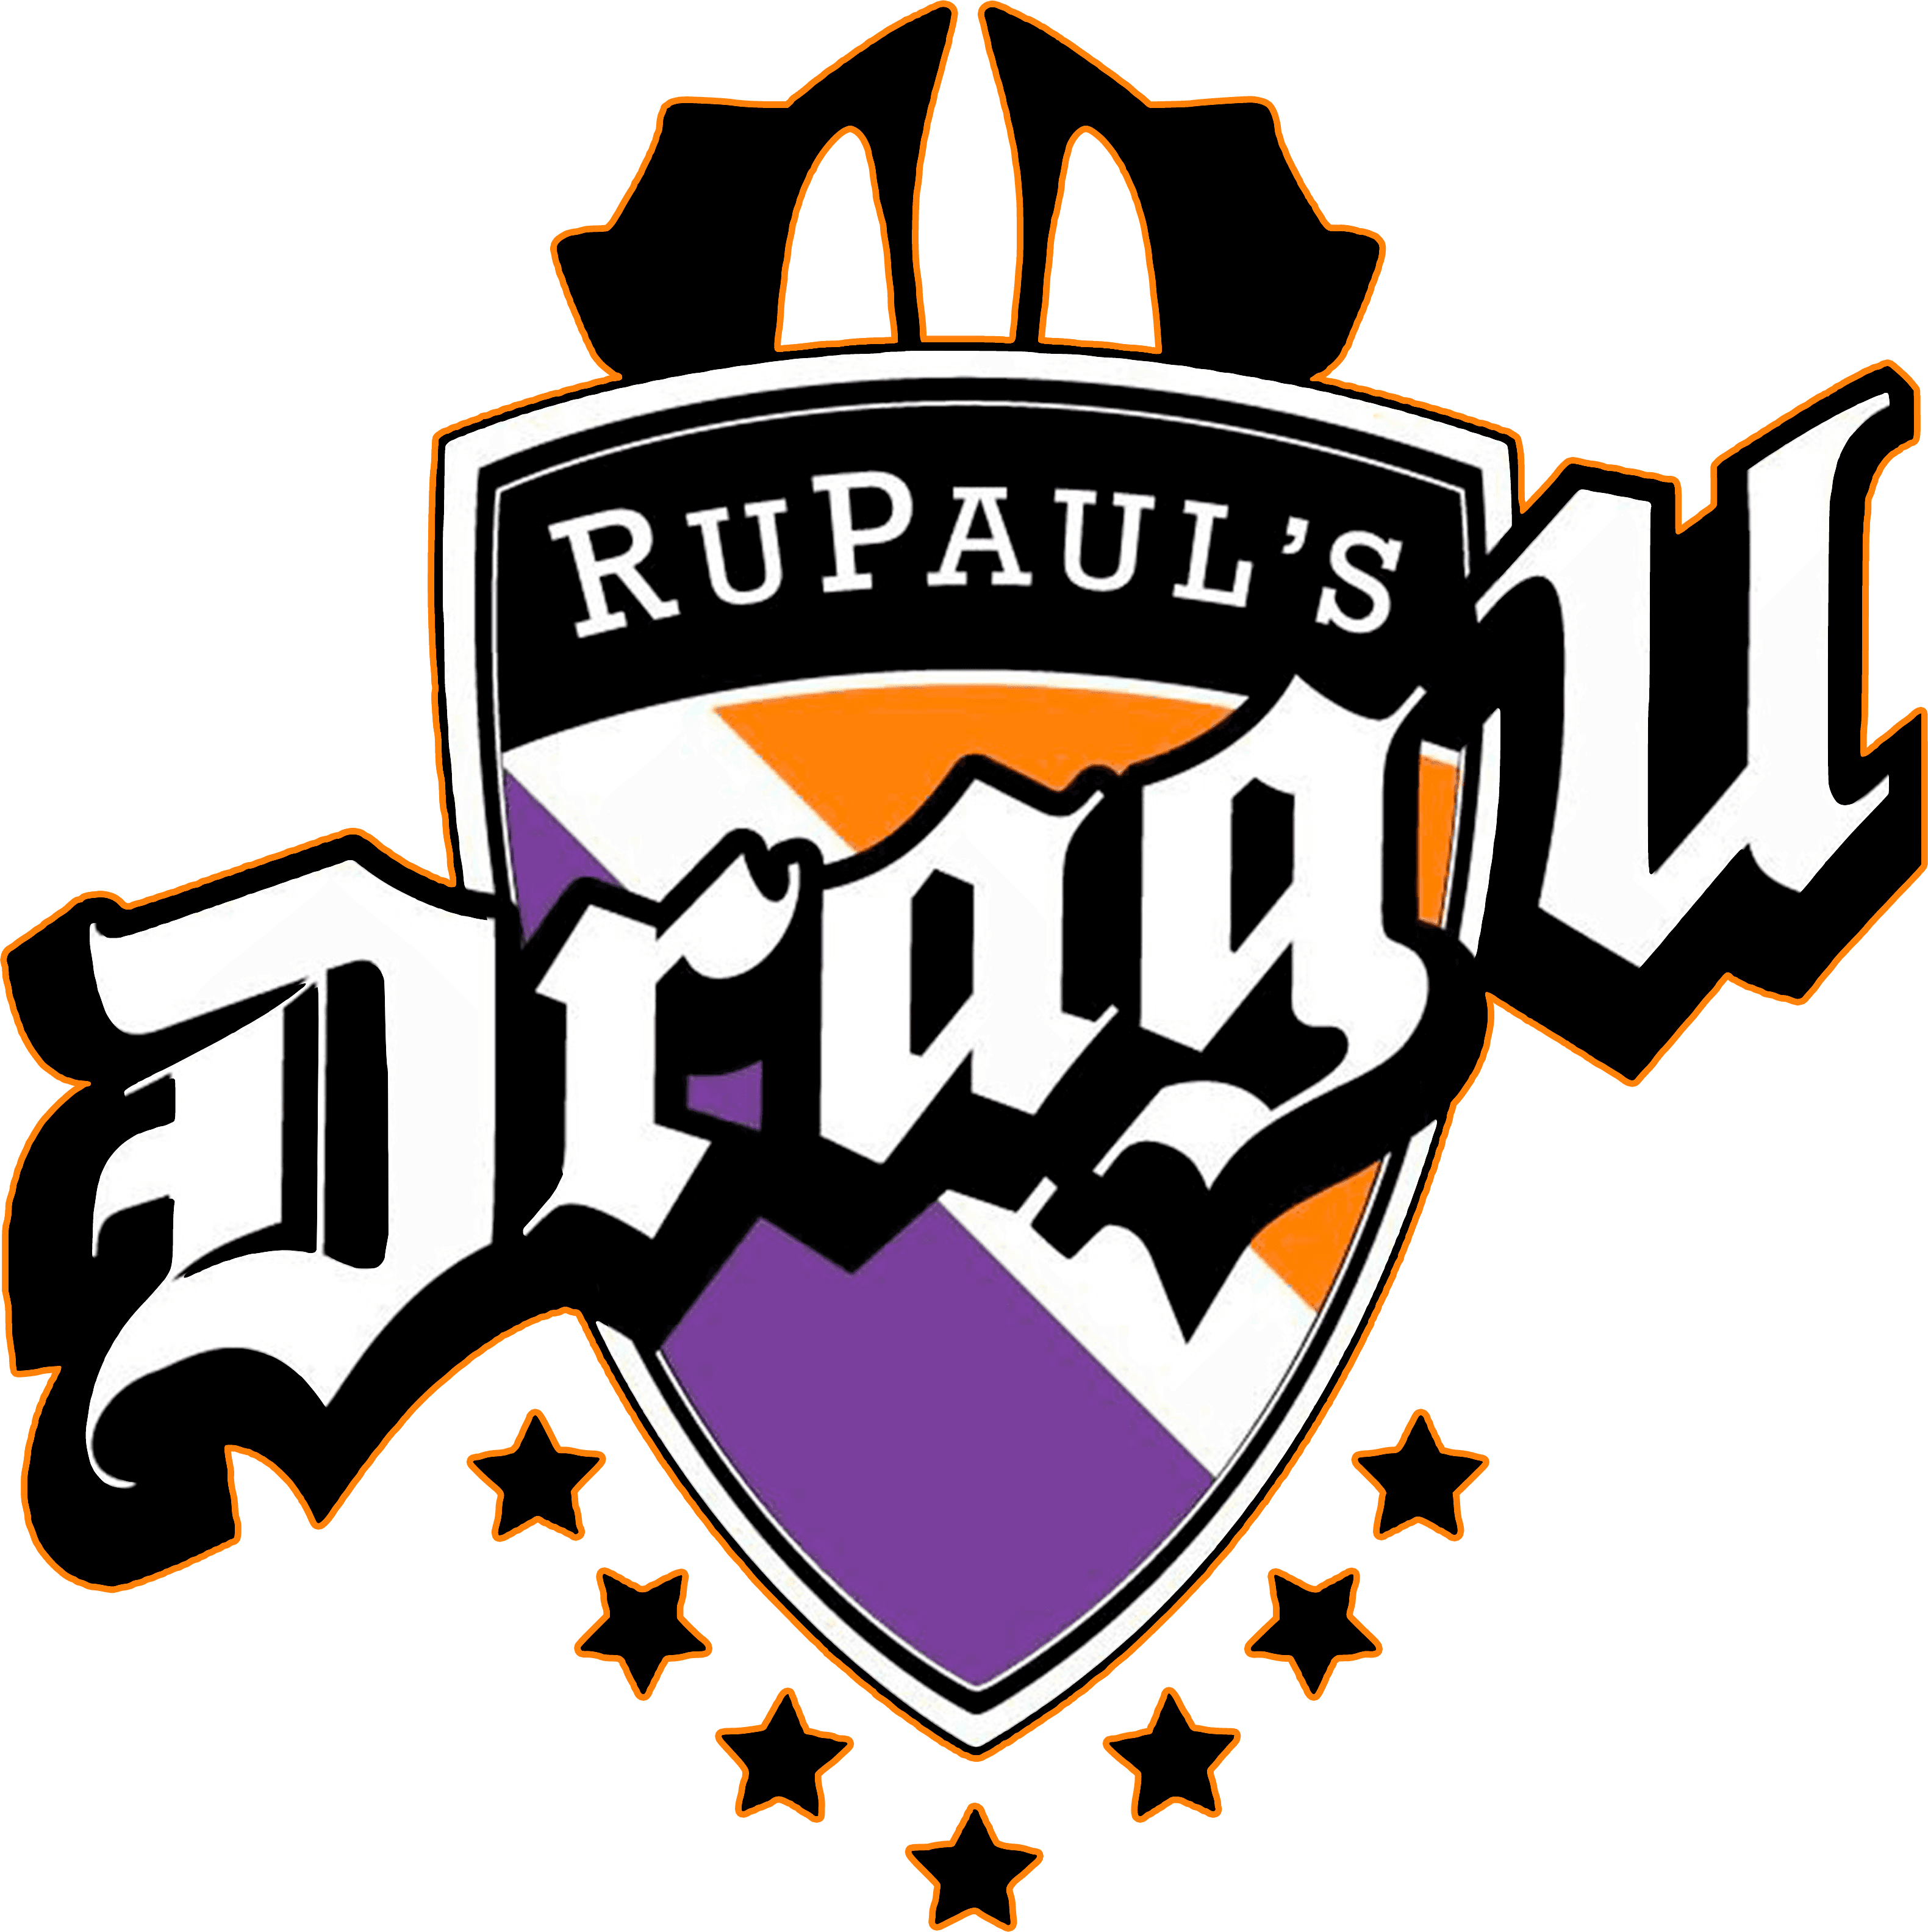 RuPaul's Drag U logo